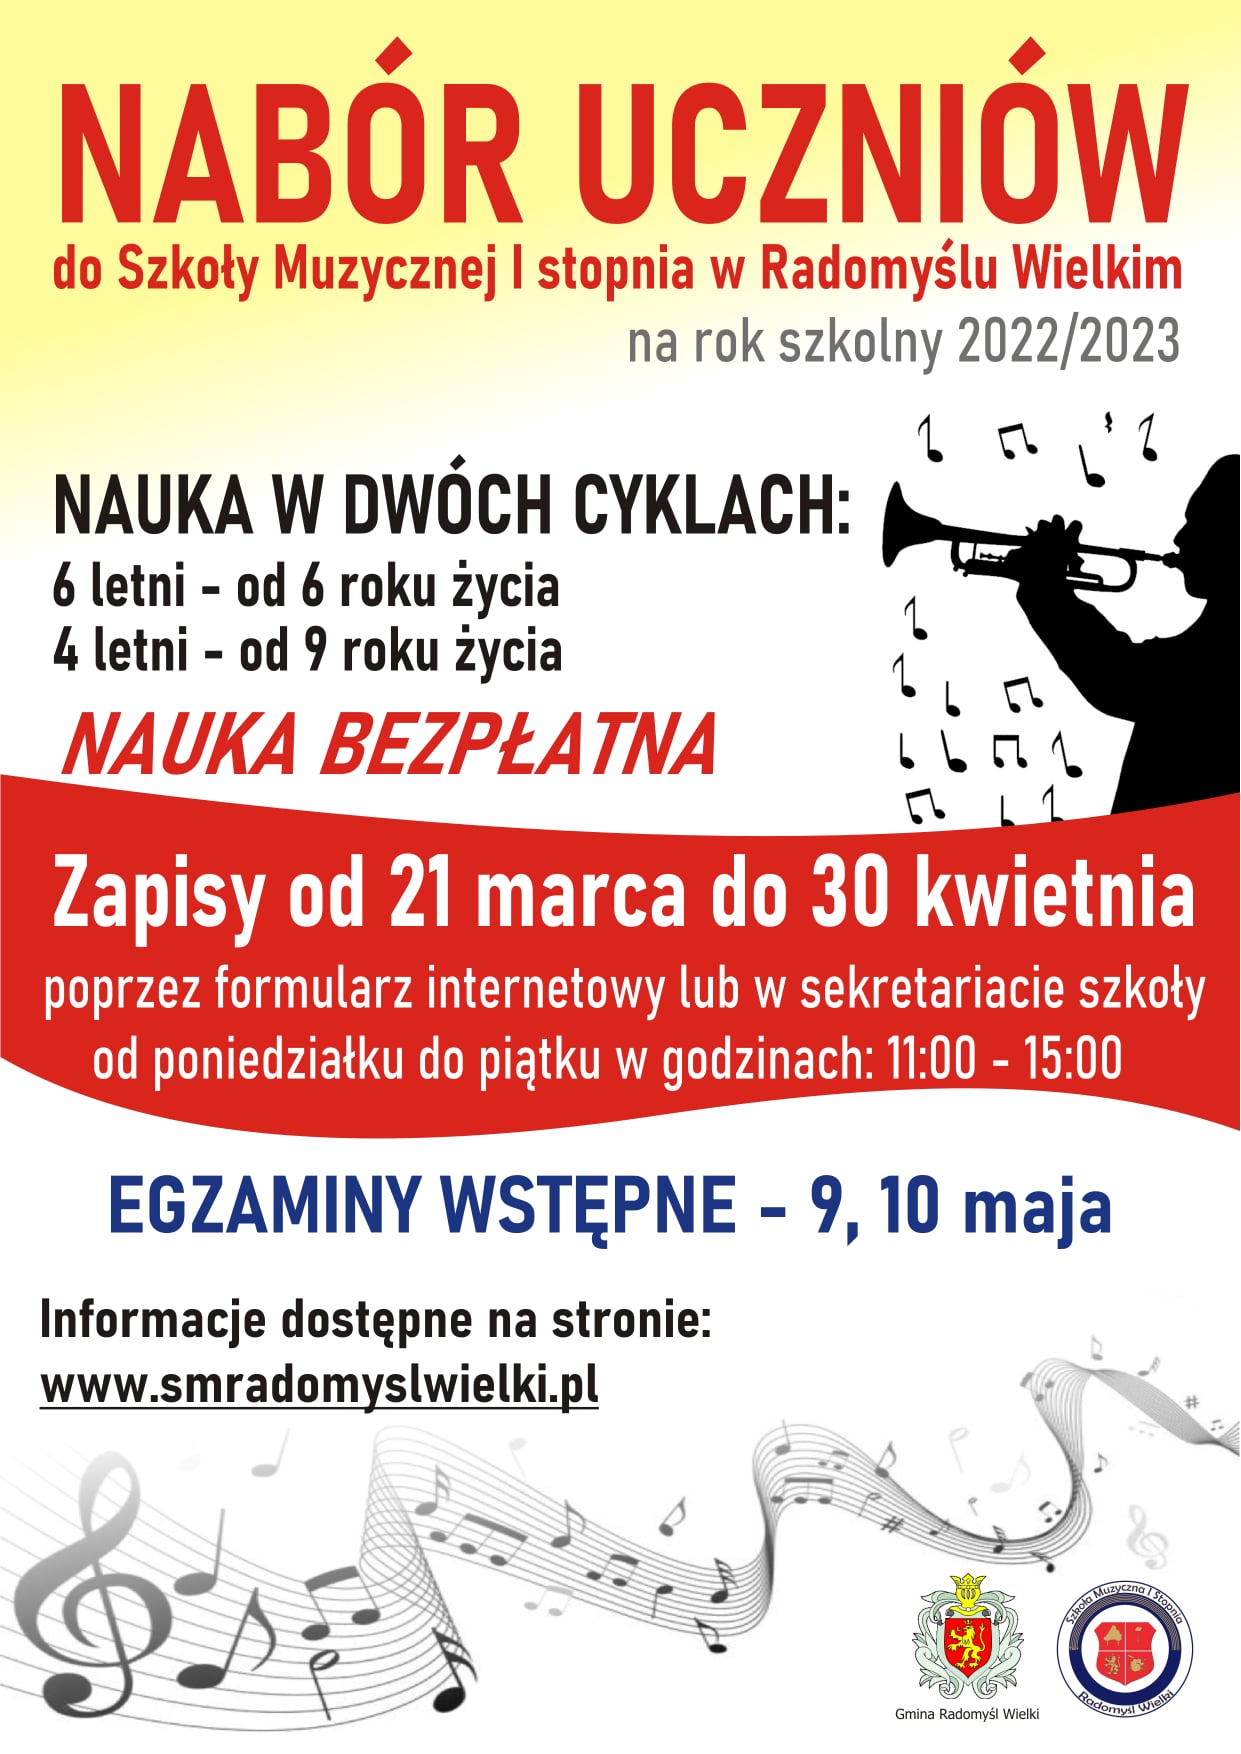 Plakat dotyczący naboru uczniów do Szkoły Muzycznej w Radomyślu Wielkim